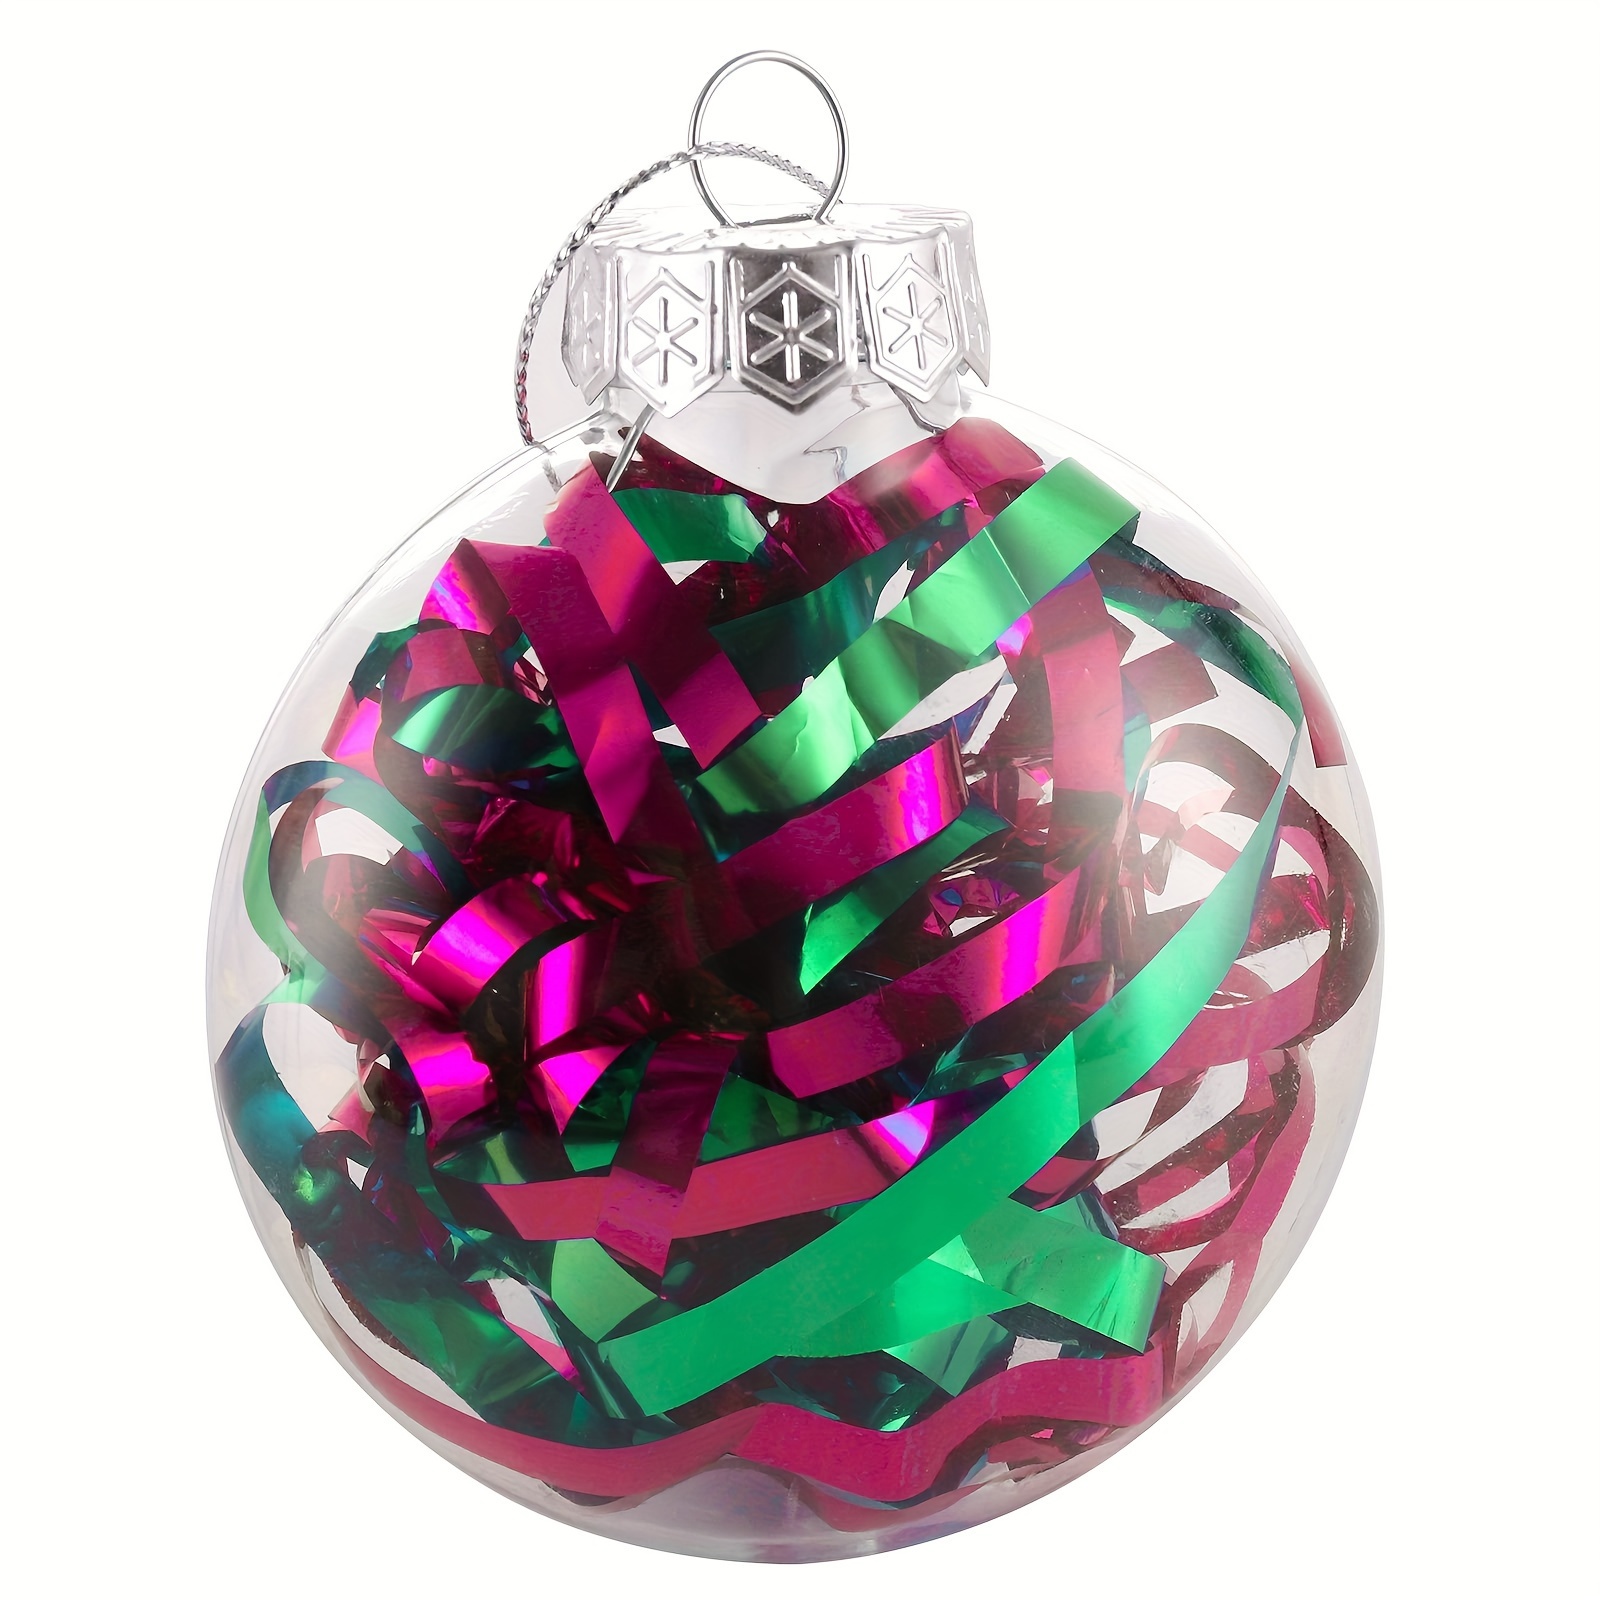 Christmas Ornaments Balls Clear Plastic Ornaments Hanging Christmas Fillable Balls Ornament for DIY Crafts - 12PCS(3.15'')